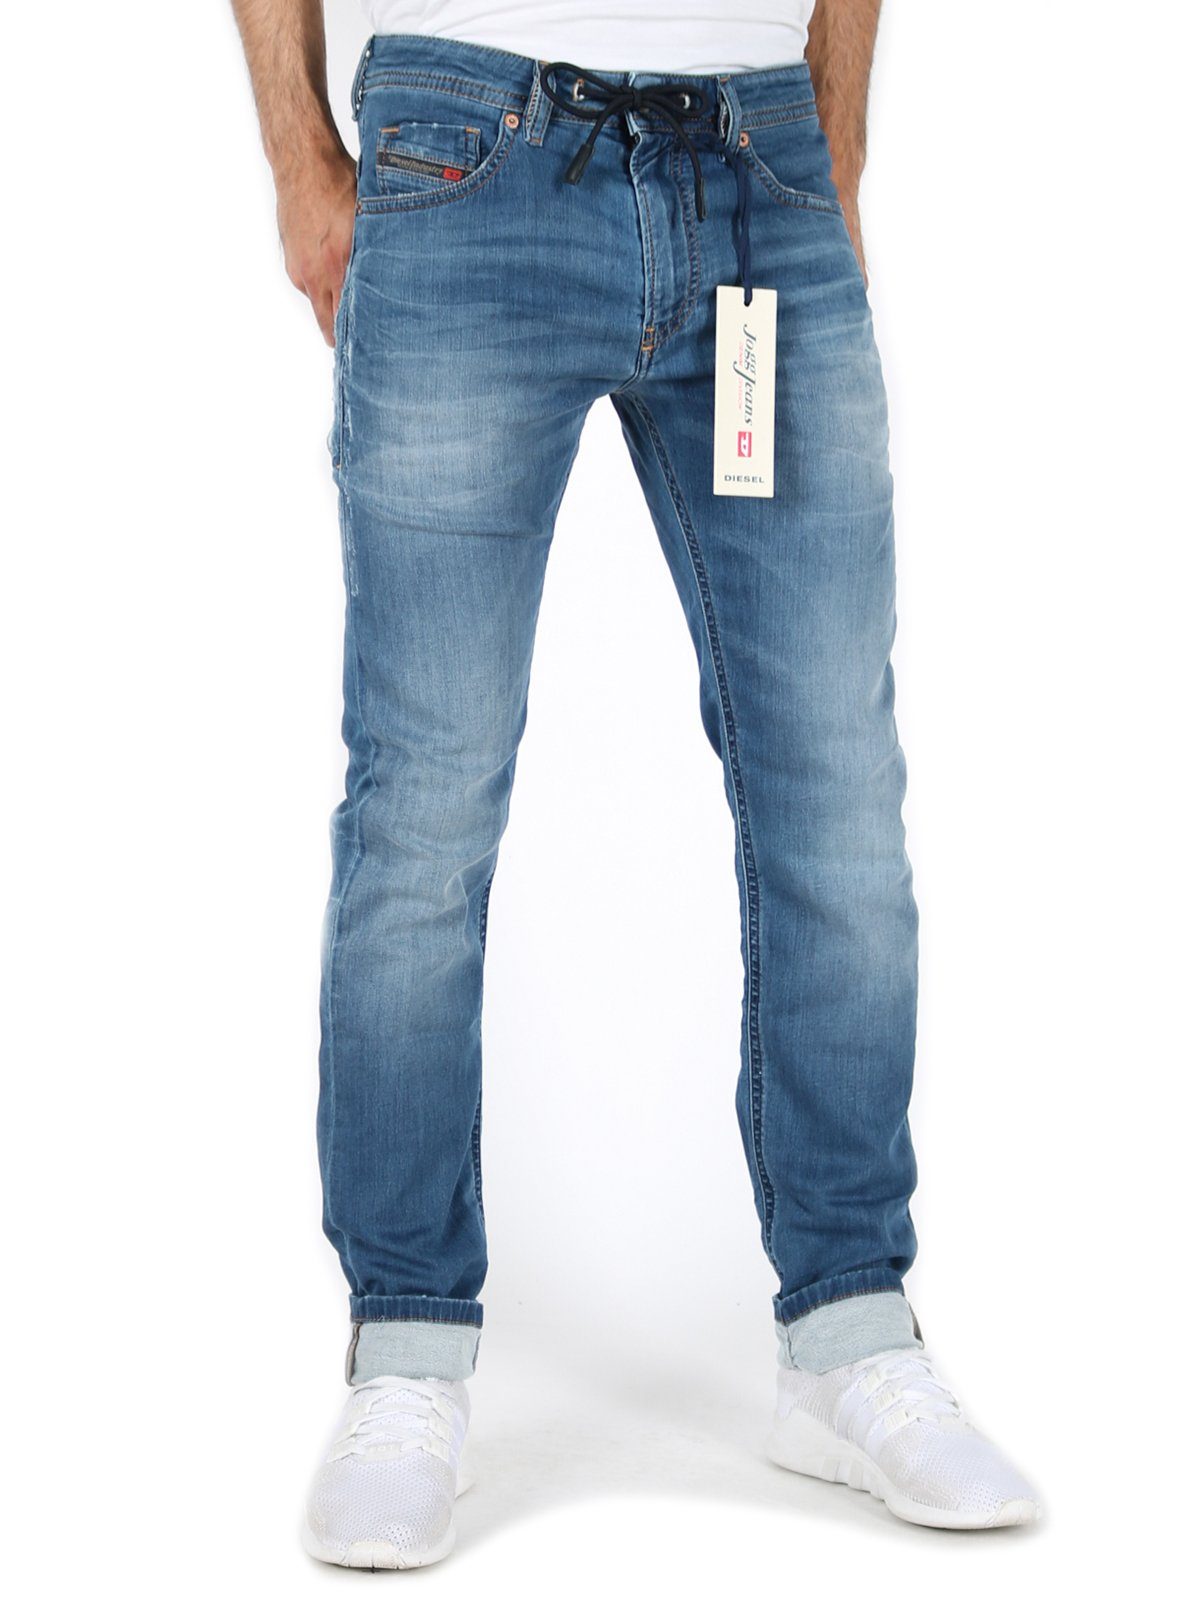 Diesel Slim-fit-Jeans Herren Jogg Jeans Stretch Hose Mittel Blau, Thommer  CB-NE 069BB online kaufen | OTTO